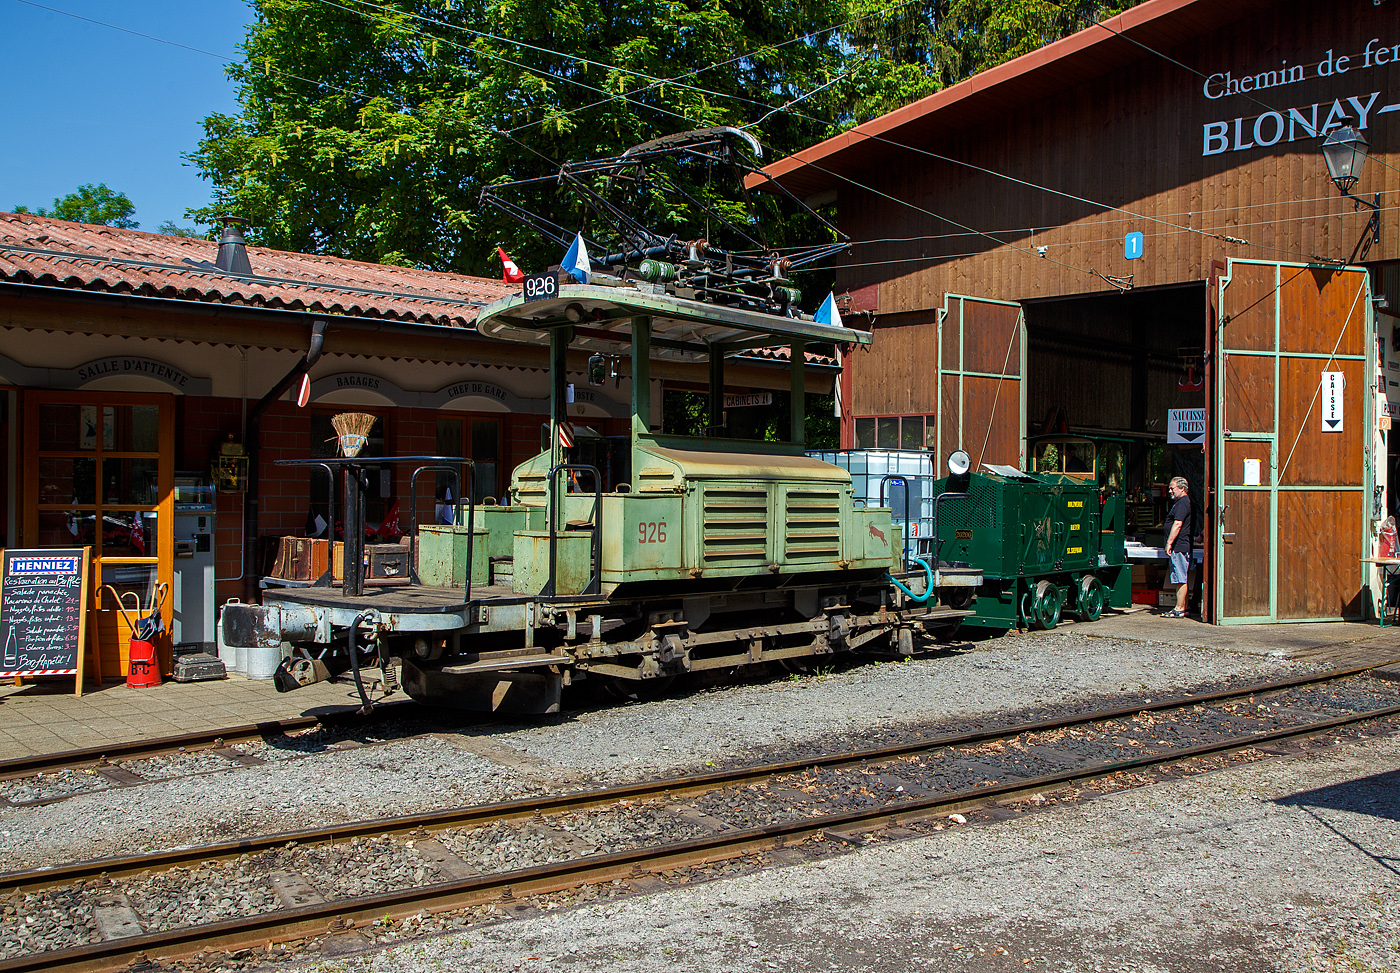 Mit einem 1m³-Wassertank und einer Motorspritze ausgestatte, als Feuerlöschreserve...
Der Te 2/2 926 der Museumsbahn Blonay-Chamby, ex VBZ (Verkehrsbetriebe Zürich) Schienentraktor Xe 2/2 – 1926, ex Xe 2/2 – 926, ex StStZ Xe 2/2 – 926, der Museumsbahn Blonay-Chamby am 27.05.2023 im Museum Chaulin. Dahinter der kleine ex MOB Schienentraktor Tm 2/2 Nr. 1, ex Holzwerk Rieder, der Museumsbahn.

Der Te 2/2 Schienentraktor wurde 1935 von der damaligen Städtische Straßenbahn Zürich (StStZ) selbst gebaut, der elektrische Teil ist von der Maschinenfabrik Oerlikon (MFO). Gebaut worden sind, zwische1930 und 1935, drei dieser Rangiermaschinen Nr. 924-926 (ab 1946 in Nr. 1924 bis1926), dabei wurden Untergestell, Elektrik und Motoren von Ce 2/2 Triebwagen der Serie 57-84 (mit markantem Peckham-Untergestell) verwendet. 

Die drei Manövrierwagen von erhielten zur Erleichterung der Fahrtrichtungswechsel von Anfang an einen Pantografen statt des umständlichen Lyrabügels. Die Rangierer fügten in den Depots den Triebwagen für die Hauptverkehrszeit die Beiwagen zu. Die Führerstände waren längs eingebaut, mit freier Sicht auf die Kupplungen, so konnte man mit ihnen sozusagen millimetergenau anfahren. Ihr grüner Anstrich und das charakteristische Fahrverhalten trugen ihnen den Spitznamen „Laubfrosch“ ein.

Speziell für Zürich war die große Flotte von Rangierfahrzeugen. Diese hatten die Aufgabe, für die Stoßzeit Verstärkungswagen beizustellen und danach wieder von den Tramzügen abzuziehen. Dazu gehörten auch Fahrten zwischen dem zugeteilten Depot und den Bereitstellungsgleisen an Wendeschleifen. Ende der 1960ziger Jahre wurde, durch die große Zahl angeschafften Mirage-Gelenkzüge, die Flotte von 24 Stück Rangierfahrzeugen überflüssig. Das Beistellen und Abziehen von Tramanhängern vor und nach der Stoßzeit war nun überflüssig. So war 1969 war ihre Zeit abgelaufen. Während die beiden Xe 2/2 1924 und 1025 Stück abgebrochen wurden, übergab die Stadt Zürich Xe 2/2 1926 an die eben im Aufbau begriffene Museumsbahn Blonay - Chamby BC. Dort leistete das gut unterhaltene und sehr bewegliche Triebfahrzeug wertvolle Dienste bei der Wiederinbetriebnahme der Strecke und beim Bau des Depots. Heute wird der „Laubfrosch“ mit seiner alten Zürcher Nummer 926 bestimmungsgemäß als Rangierfahrzeug auf dem Depotareal der BC benutzt. Hier kann der Laubfrosch seine Stärken ausspielen. Für den Einsatz auf der Museumsbahn musste Xe 2/2 926 die +GF+-Kupplung gegen eine herkömmliche Mittelpufferkupplung tauschen. Um den Betrieb unter der Spannung von 1000 V DB (MOB-GFM) zu ermöglichen, wurde ein zusätzlicher Widerstand montiert, die Straßenbahn Zürich fuhrt ja unter 700 V DC. Trotz der zusätzlichen Widerstände leistet er sehr gute Arbeitet bei der BC. Bei der Museumsbahn Blonay–Chamby tägt der Te 926 nicht den Spitznamen „Laubfrosch“ sondern „Le Bouc“ (Der Bock).

Hier wurde das Fahrzeug präventiv als Löschfahrzeug, für evtl. Bekämpfung von Böschungsbränden nach Funkenwurf durch die Dampflokomotive, vorgehalten. Gelegentlich rückt die BC Xe 2/2 926 mit dem Sprengwagen Xe 2/2 1, ex Straßenbahn Biel aus, der noch nicht wieder mit Fahrmotoren ausgerüstet ist.

TECHNISCHE DATEN:
Spurweite: 1.000 mm (Meterspur)
Gewicht: 9,3 t
Höchstgeschwindigkeit: 36 Km/h
Leistung: 2 x 44 kW = 88 kW (120 PS)
Triebraddurchmesser: 840 mm (neu)
Getriebeübersetzung: 1:4,277
Spannung: (ursprünglich) 700 V DC, bei der BC 1000 V DC

Quellen: BC, Drehscheibe